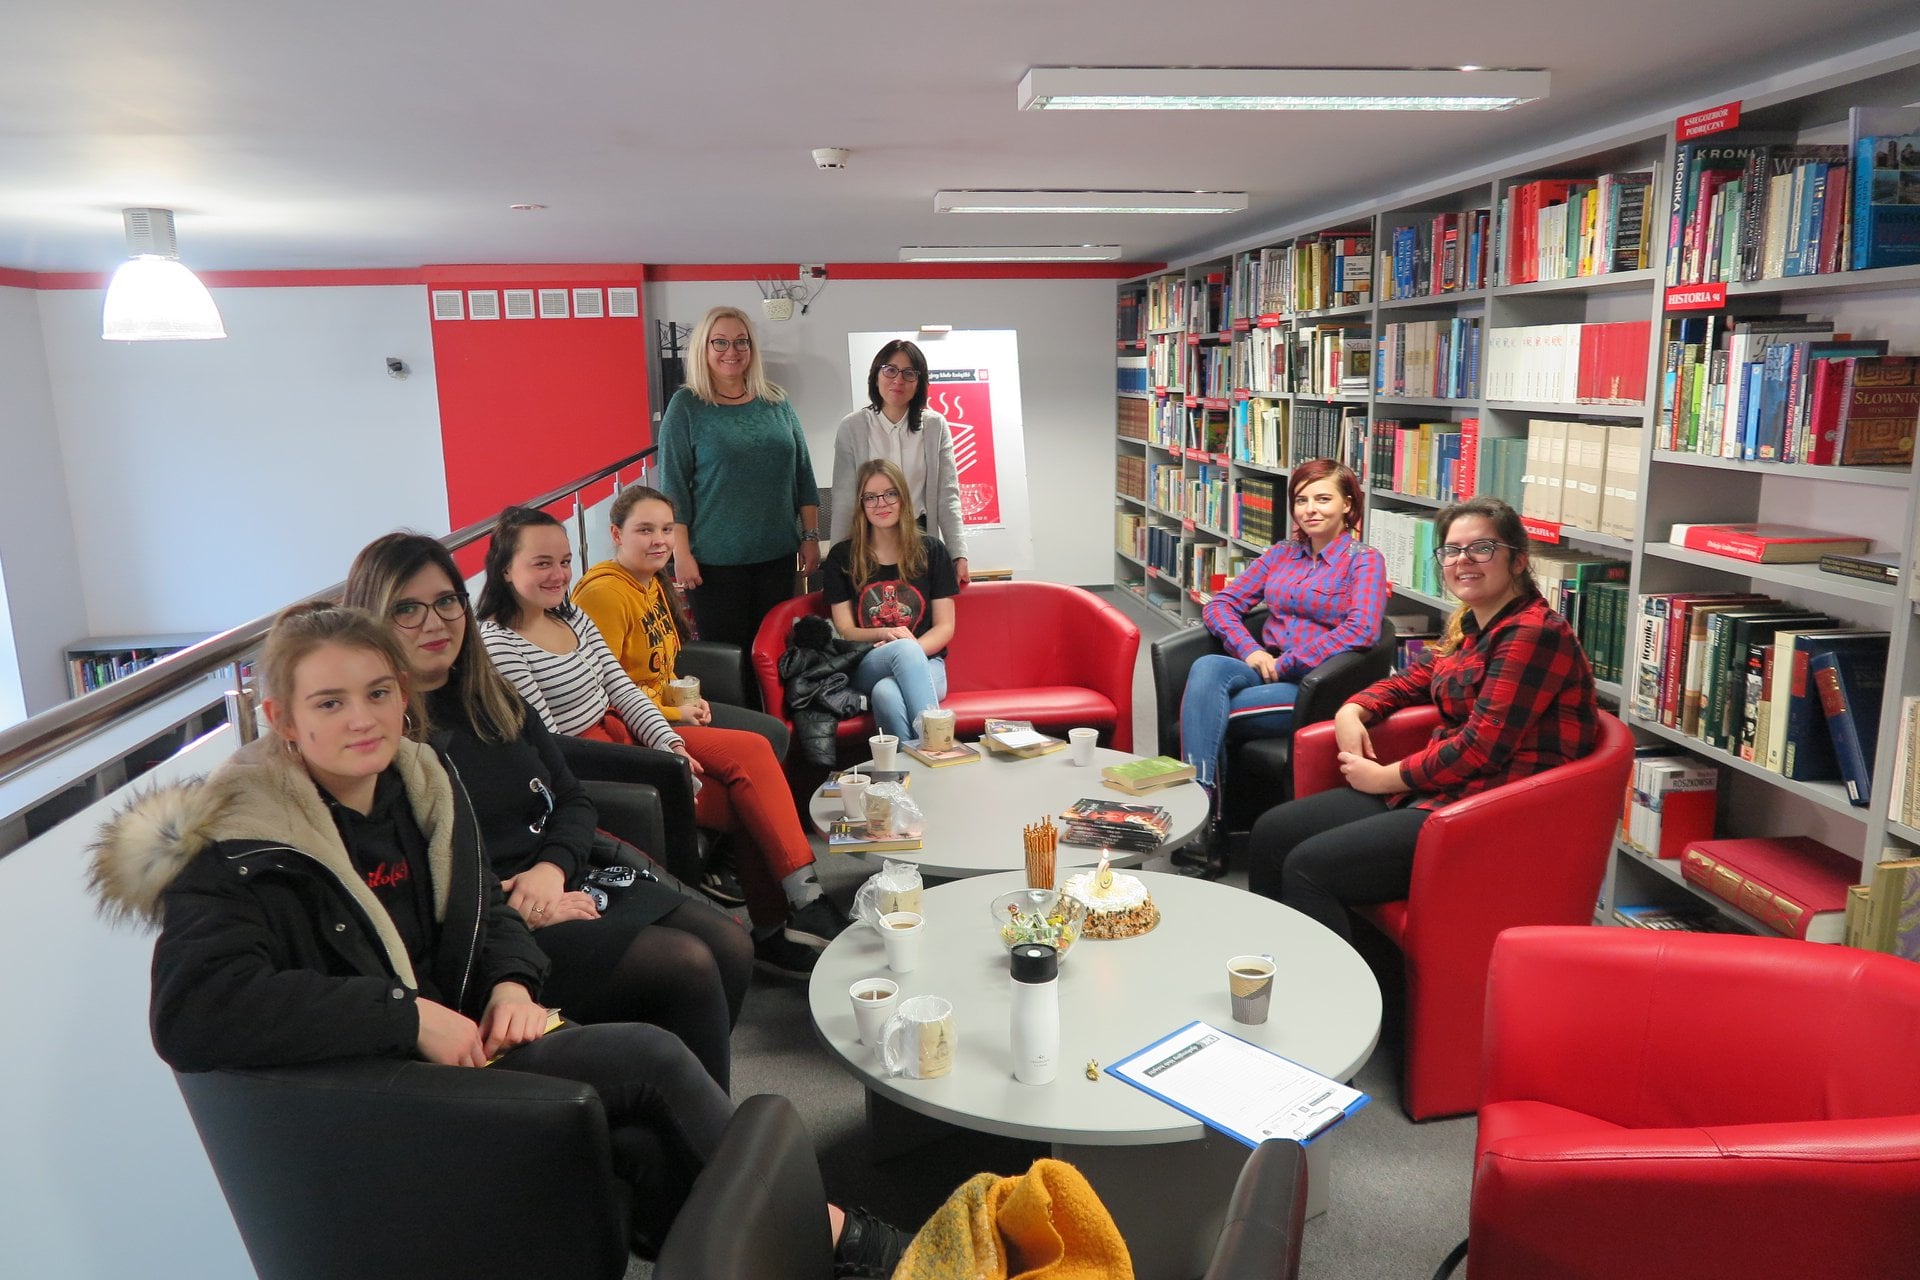 Wnętrze biblioteki. Na kanapach siedzą członkowie klubu DKK ZS Malinowo obok nich stoi pani dyrektor MBP Justyna Lytvyn oraz bibliotekarka ze Szkoły z Malinowa.